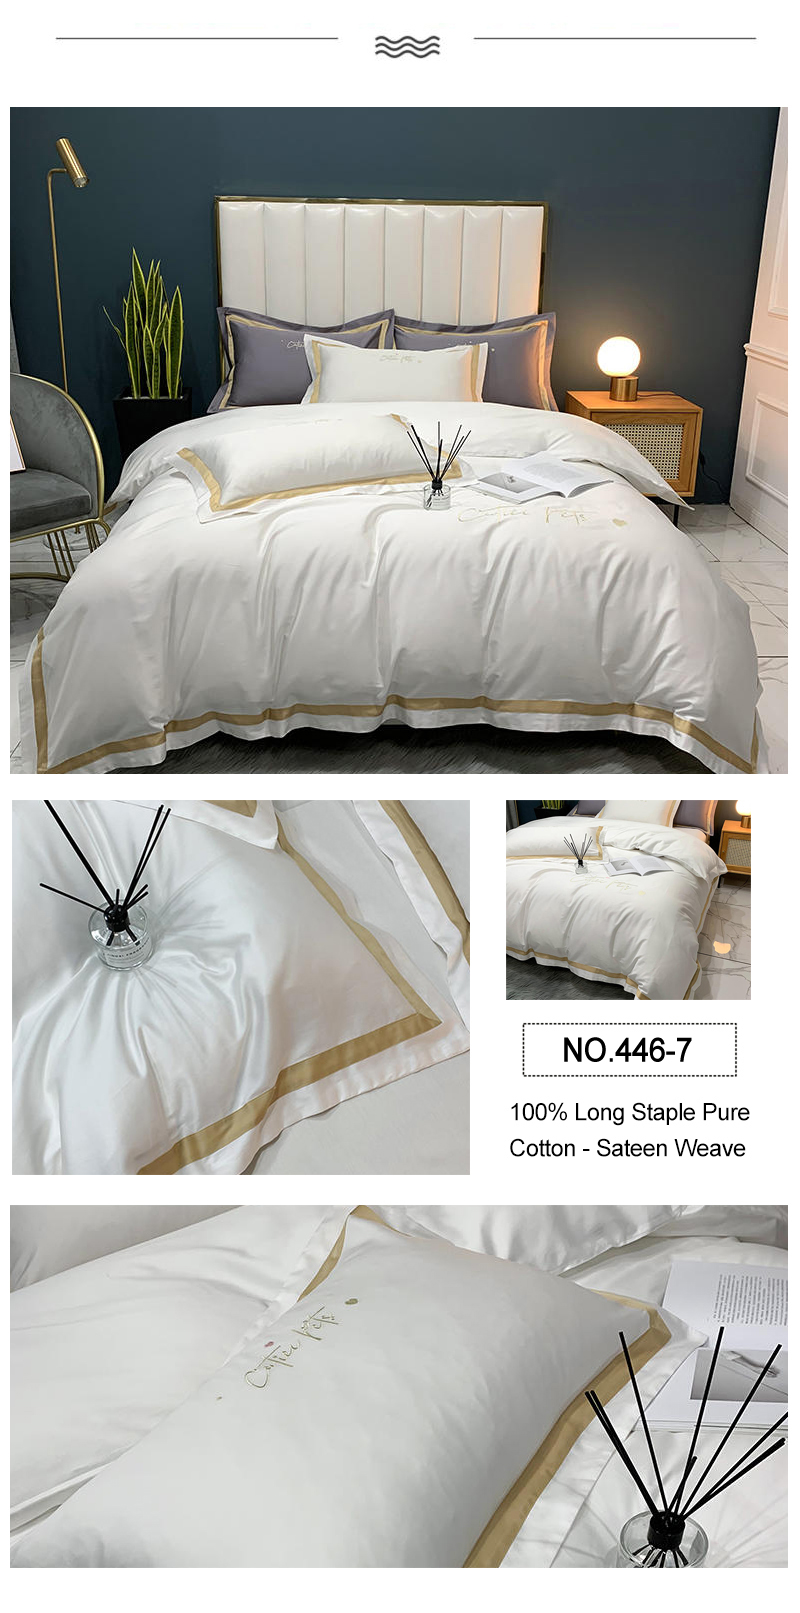 Deluxe Home Bed Linen